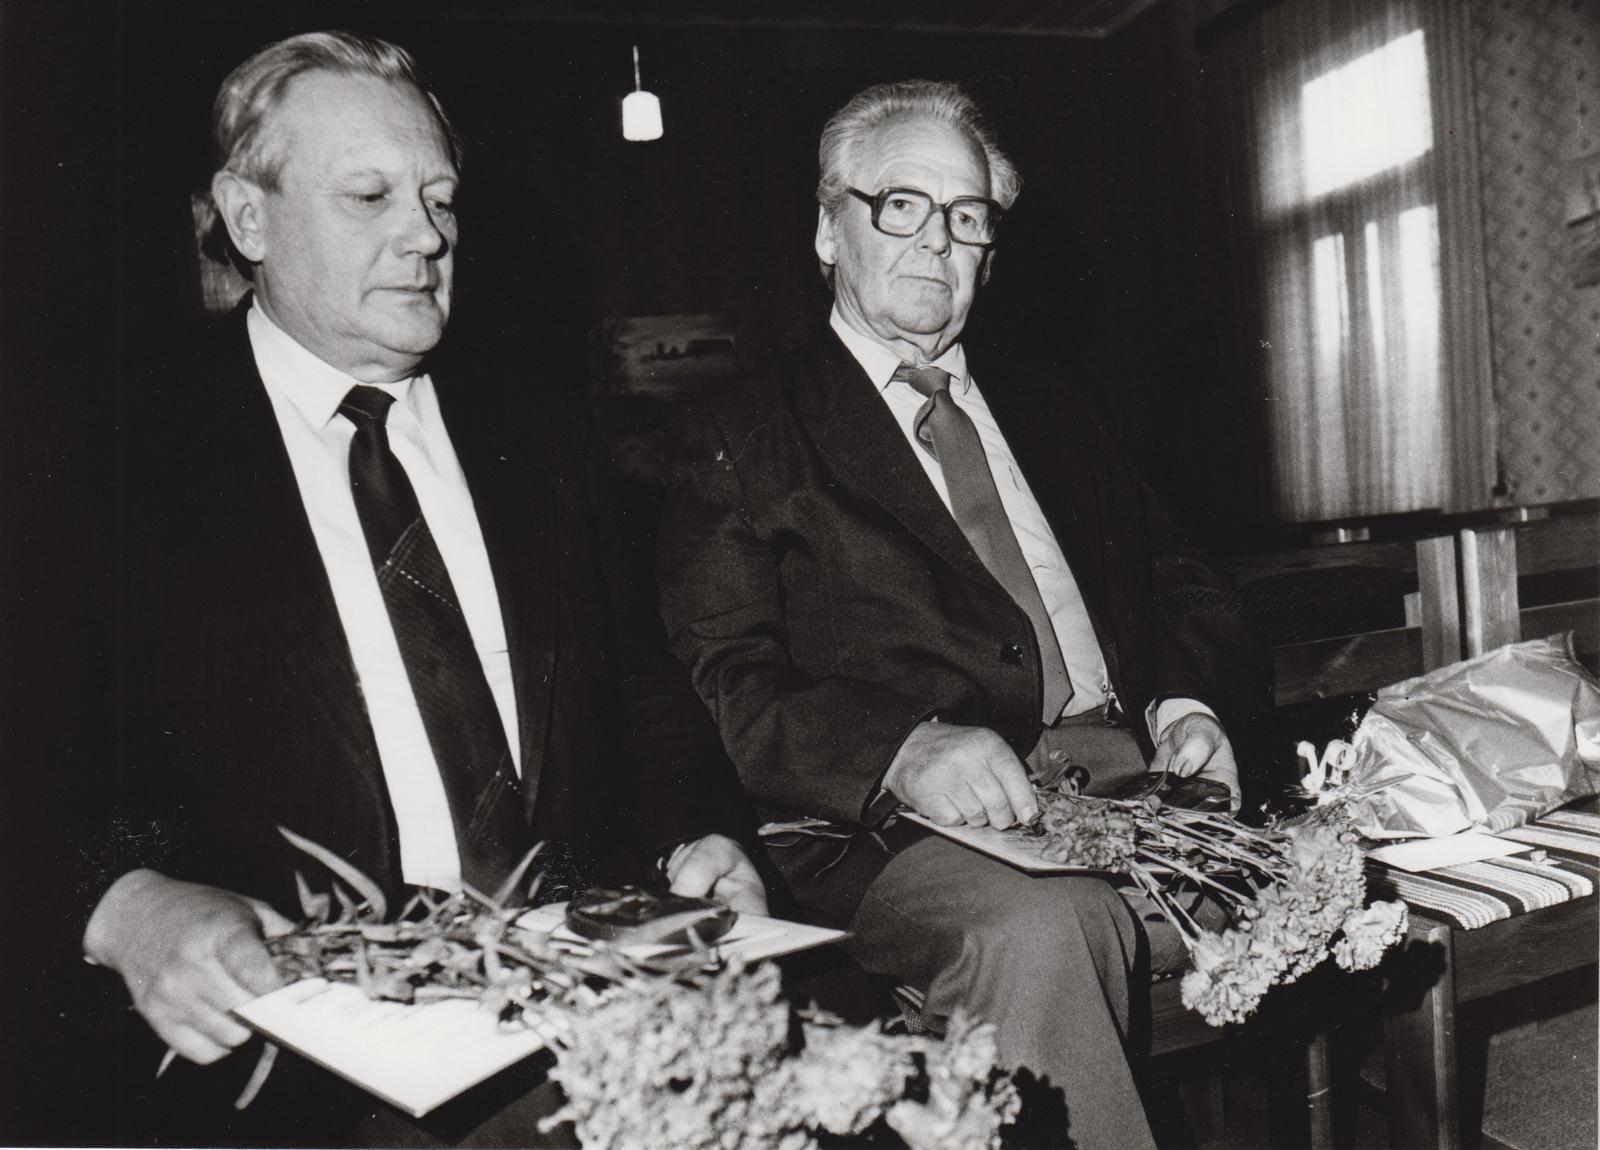 C. R. Jakobsoni nimelise medali üleandmine Joh. Juhansoole ja Manivald Metsaaltile Kurgja muuseumis 12.01.1990.